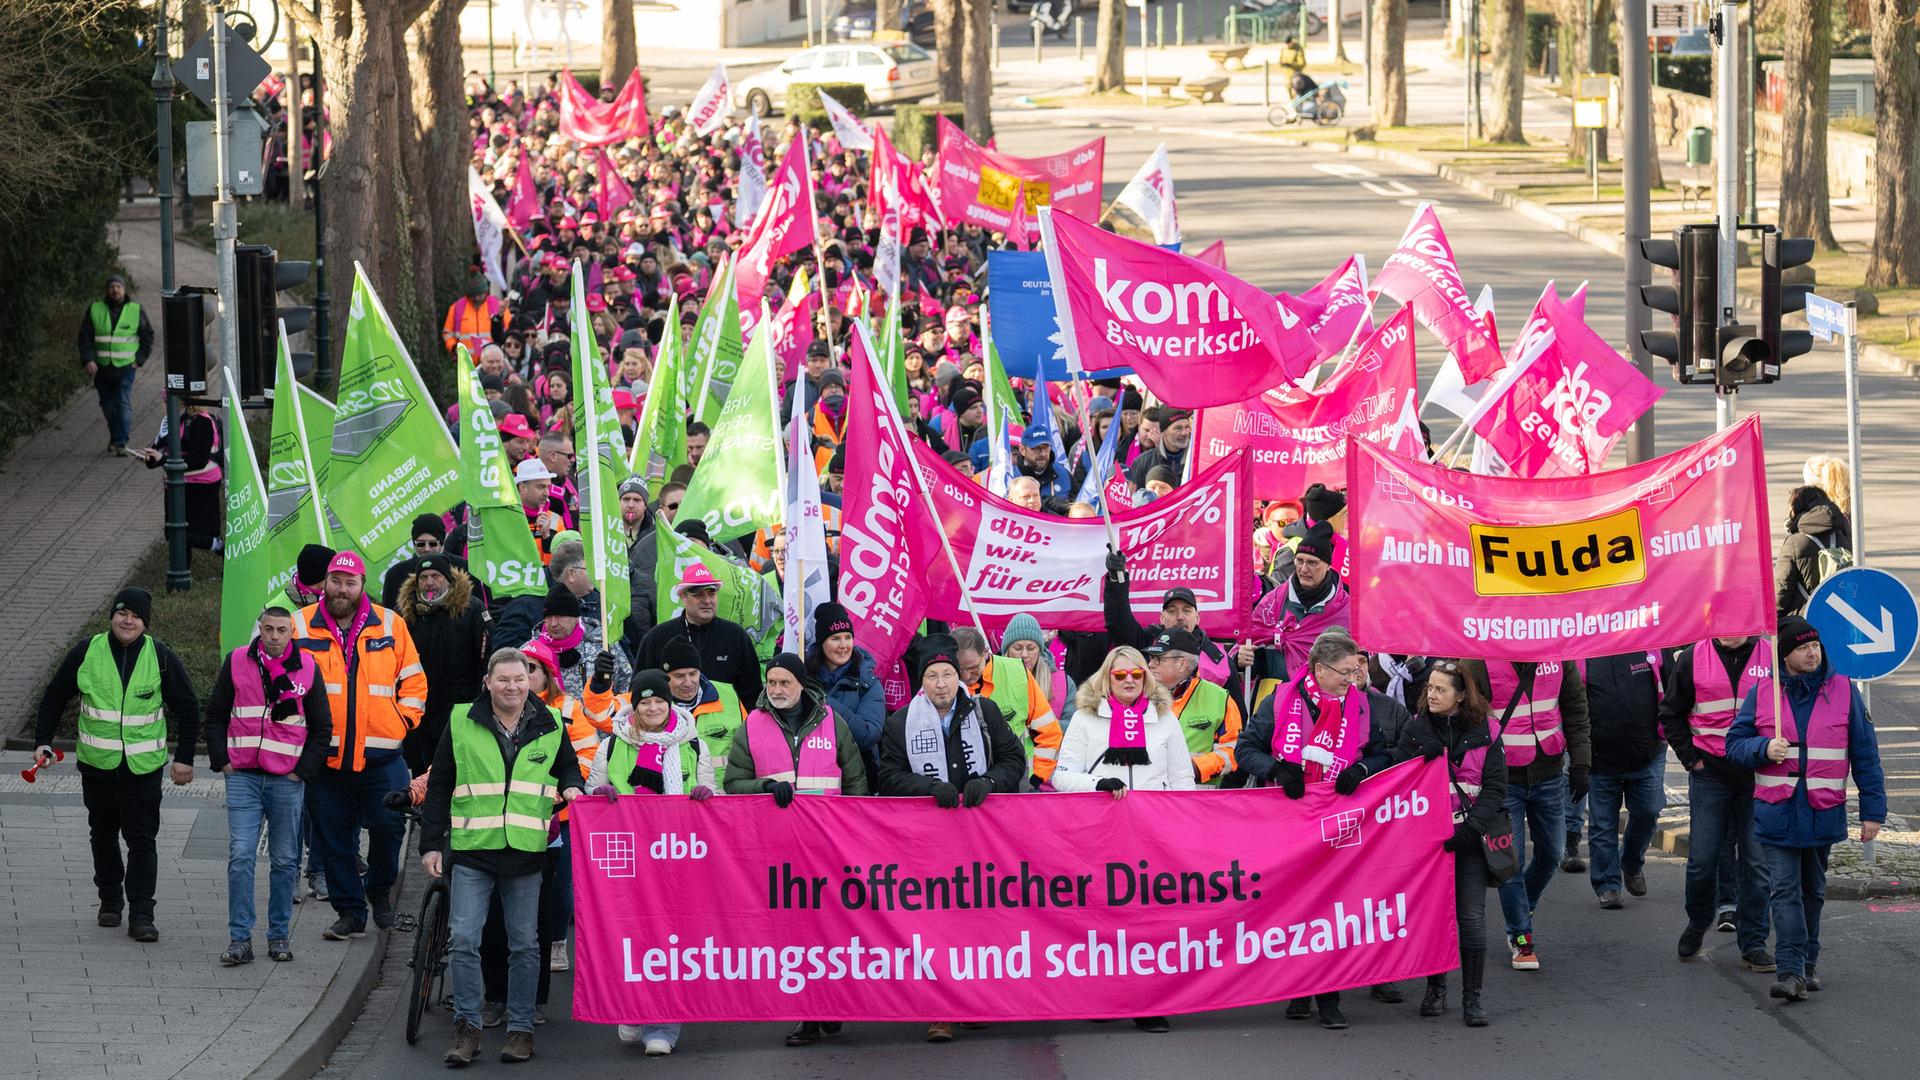 Hessen, Fulda: "Ihr öffentlicher Dienst: Leistungsstark und schlecht bezahlt" steht während eines Warnstreiks von Beschäftigten im öffentlichen Dienst auf einem Banner am Demonstrationszug.